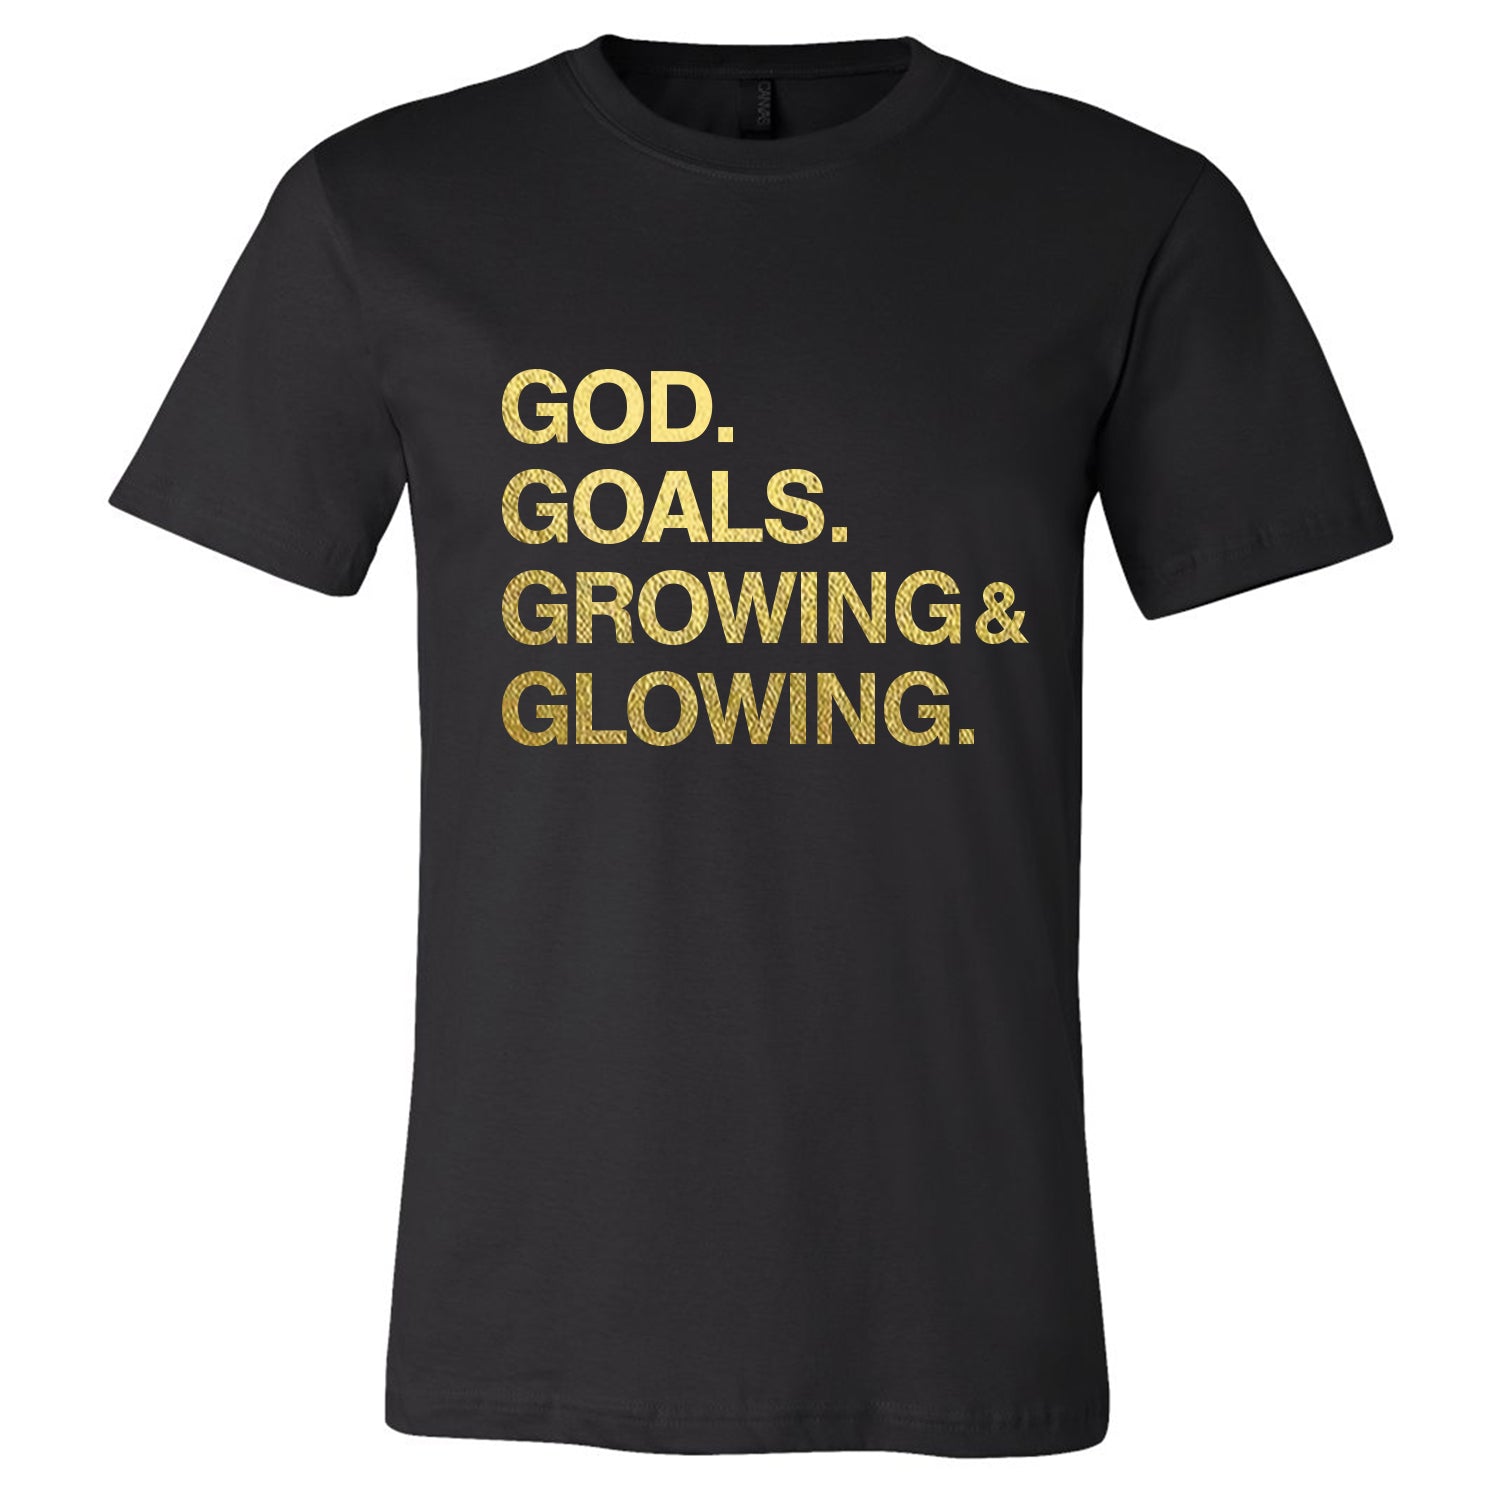 "GOD and GOALS" Tee Shirt